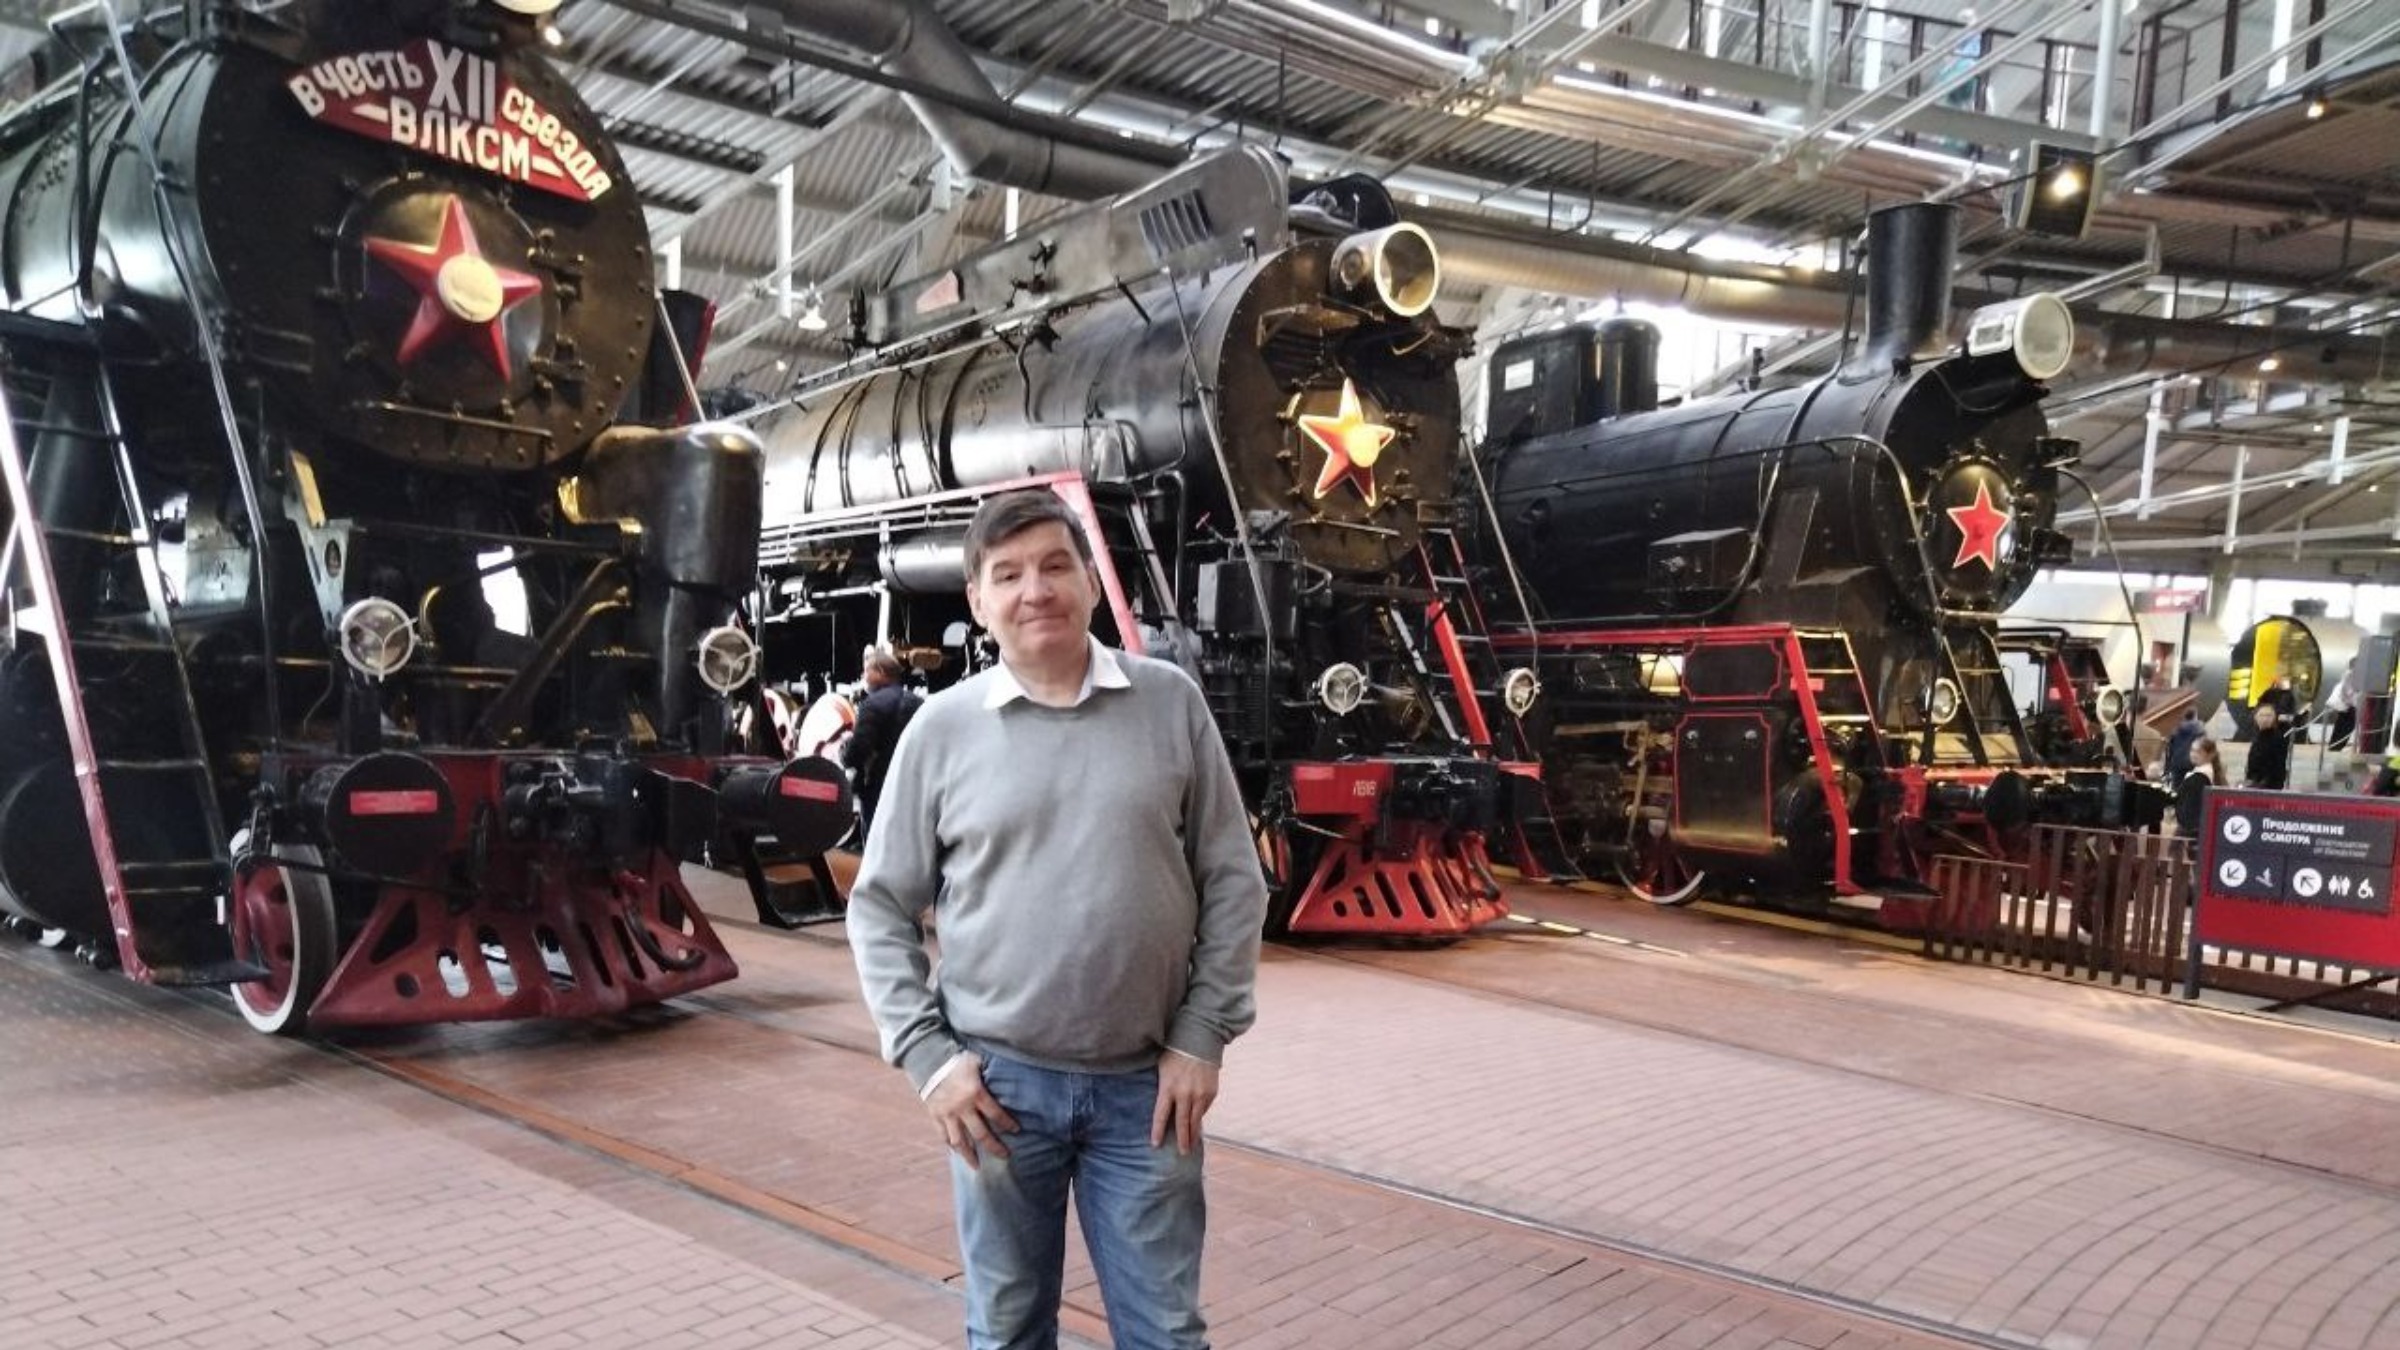 Посещение железнодорожного музея в Санкт-Петербурге.